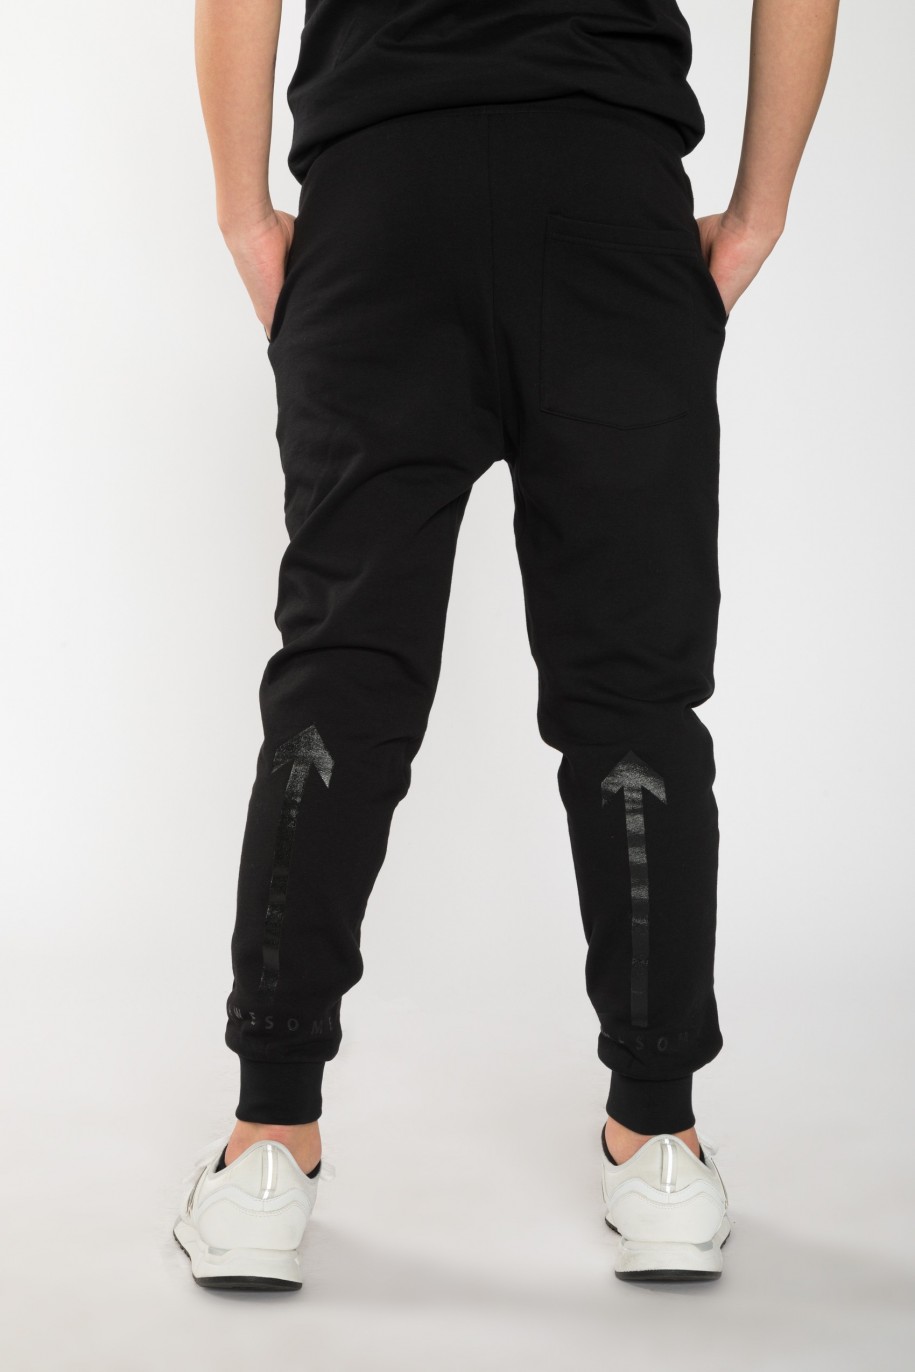 Czarne spodnie dresowe dla chłopaka z nadrukami z tyłu nogawek - 25534